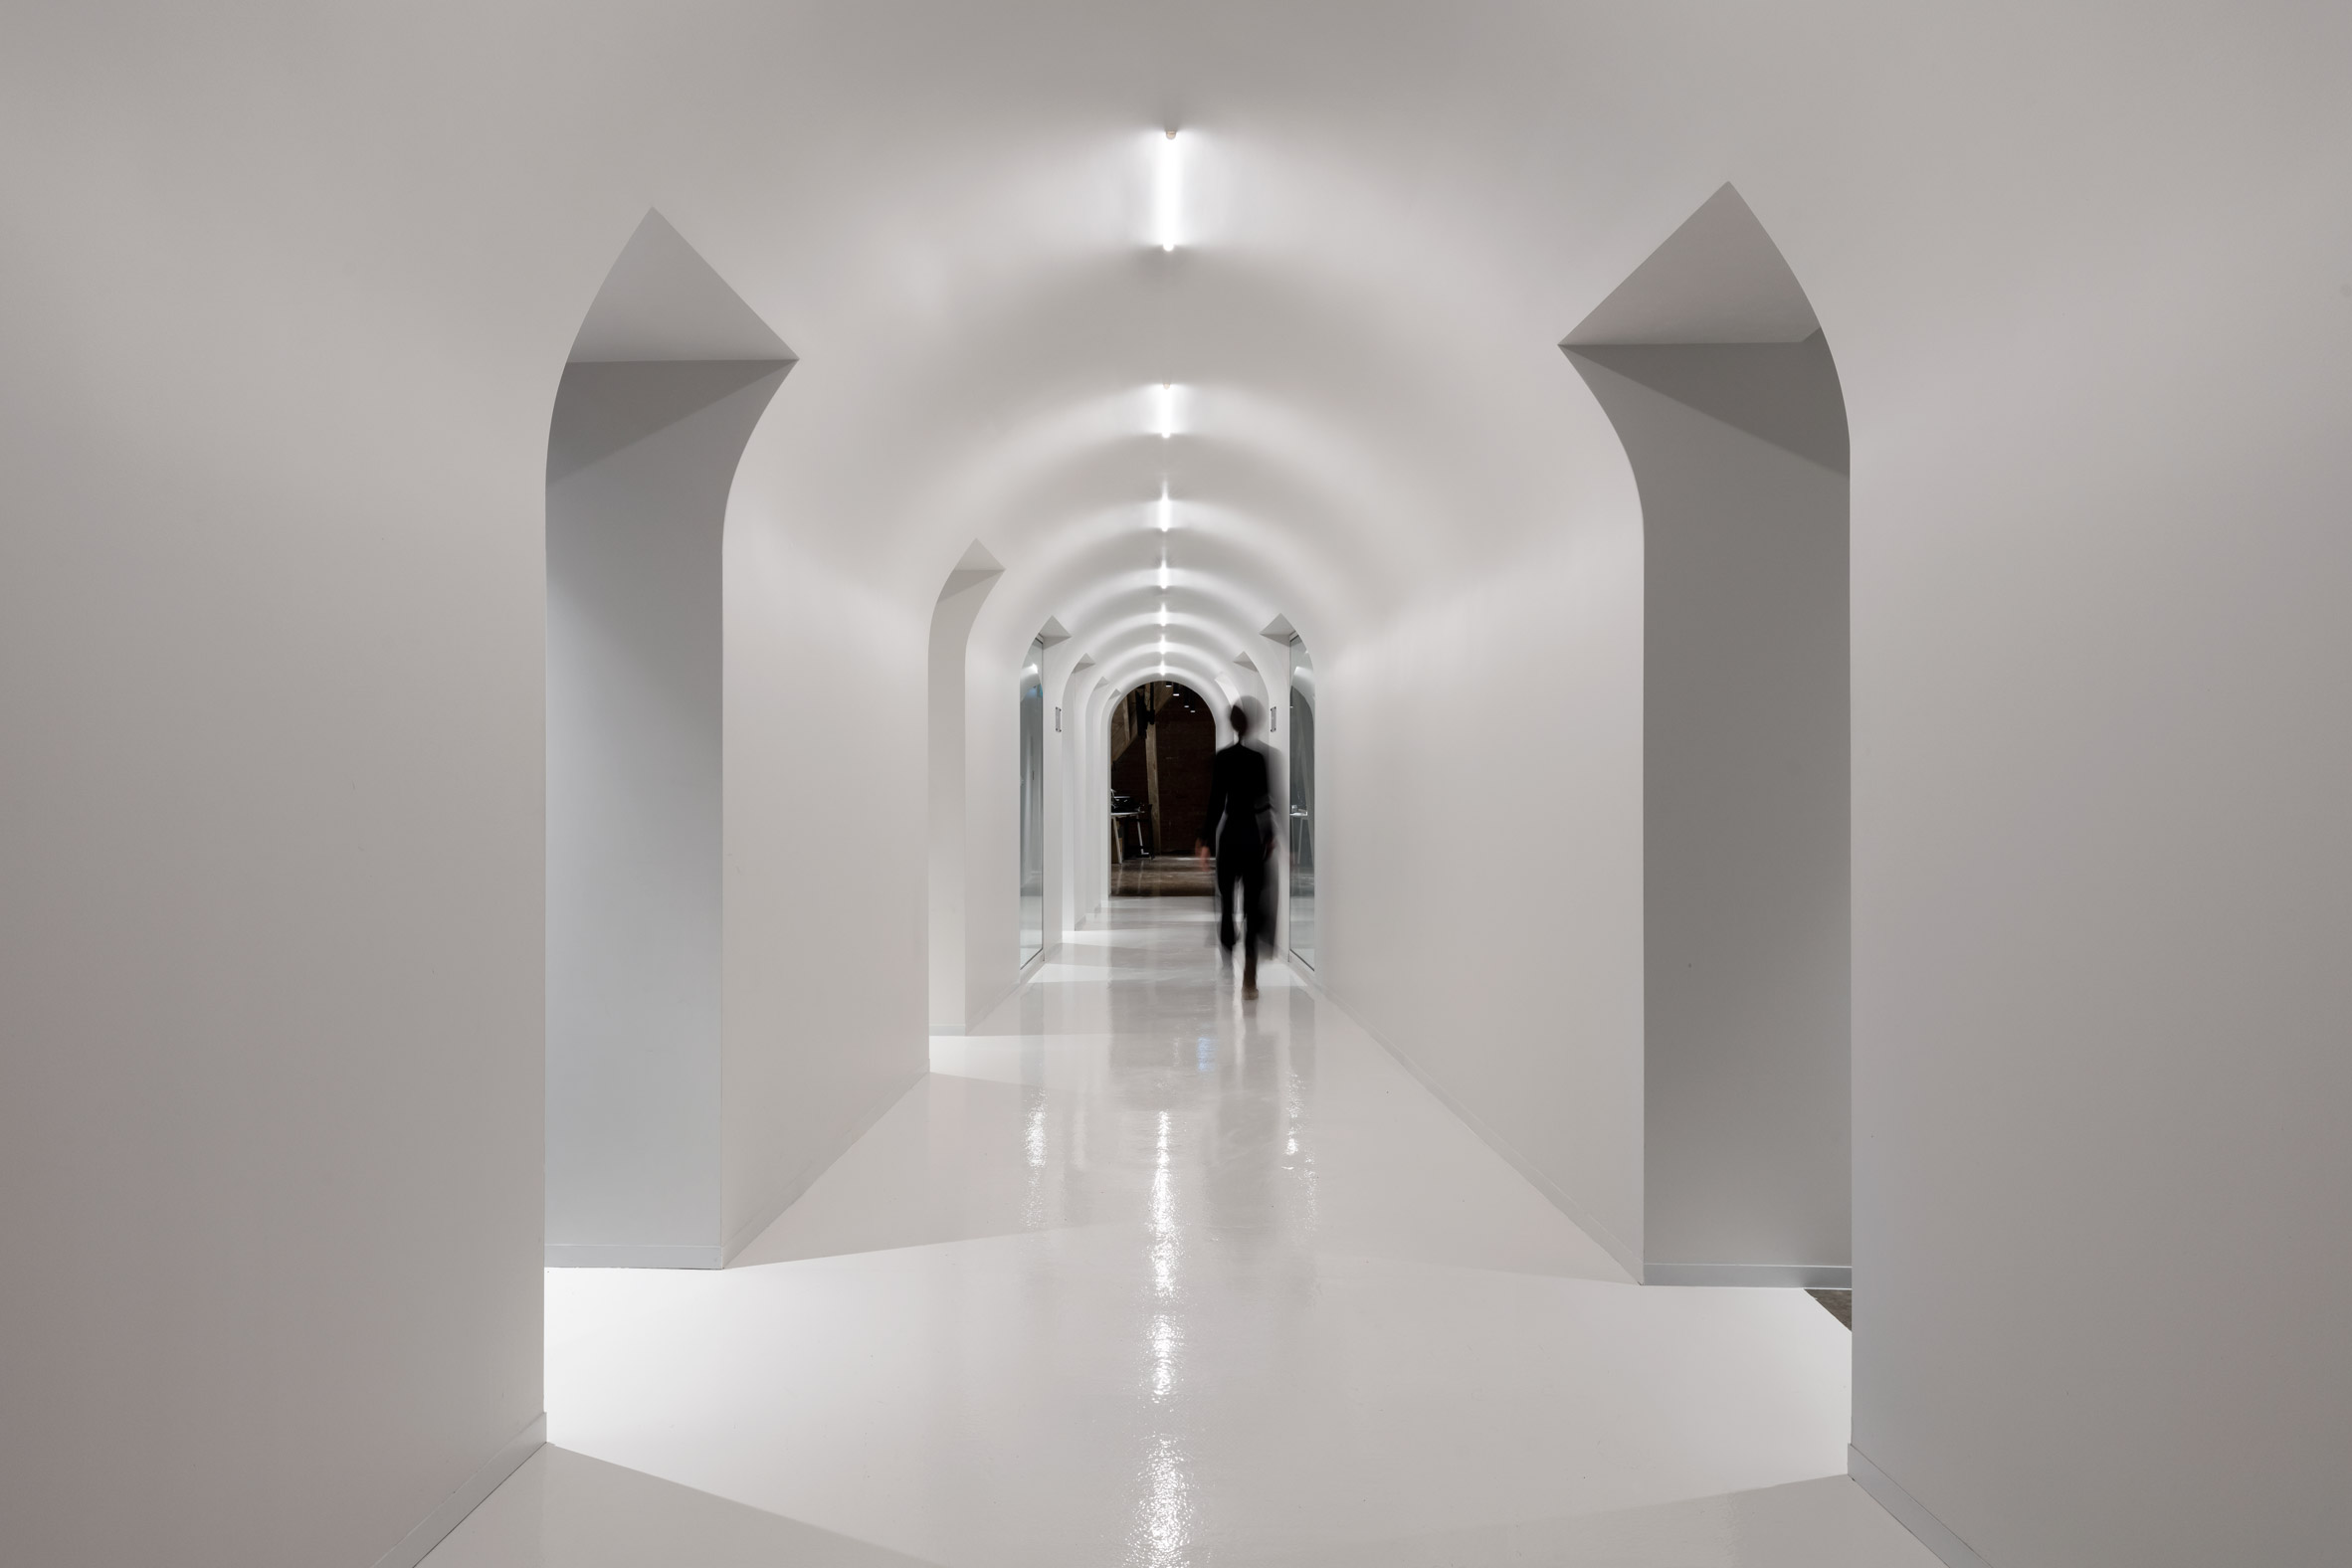 Bright white corridors